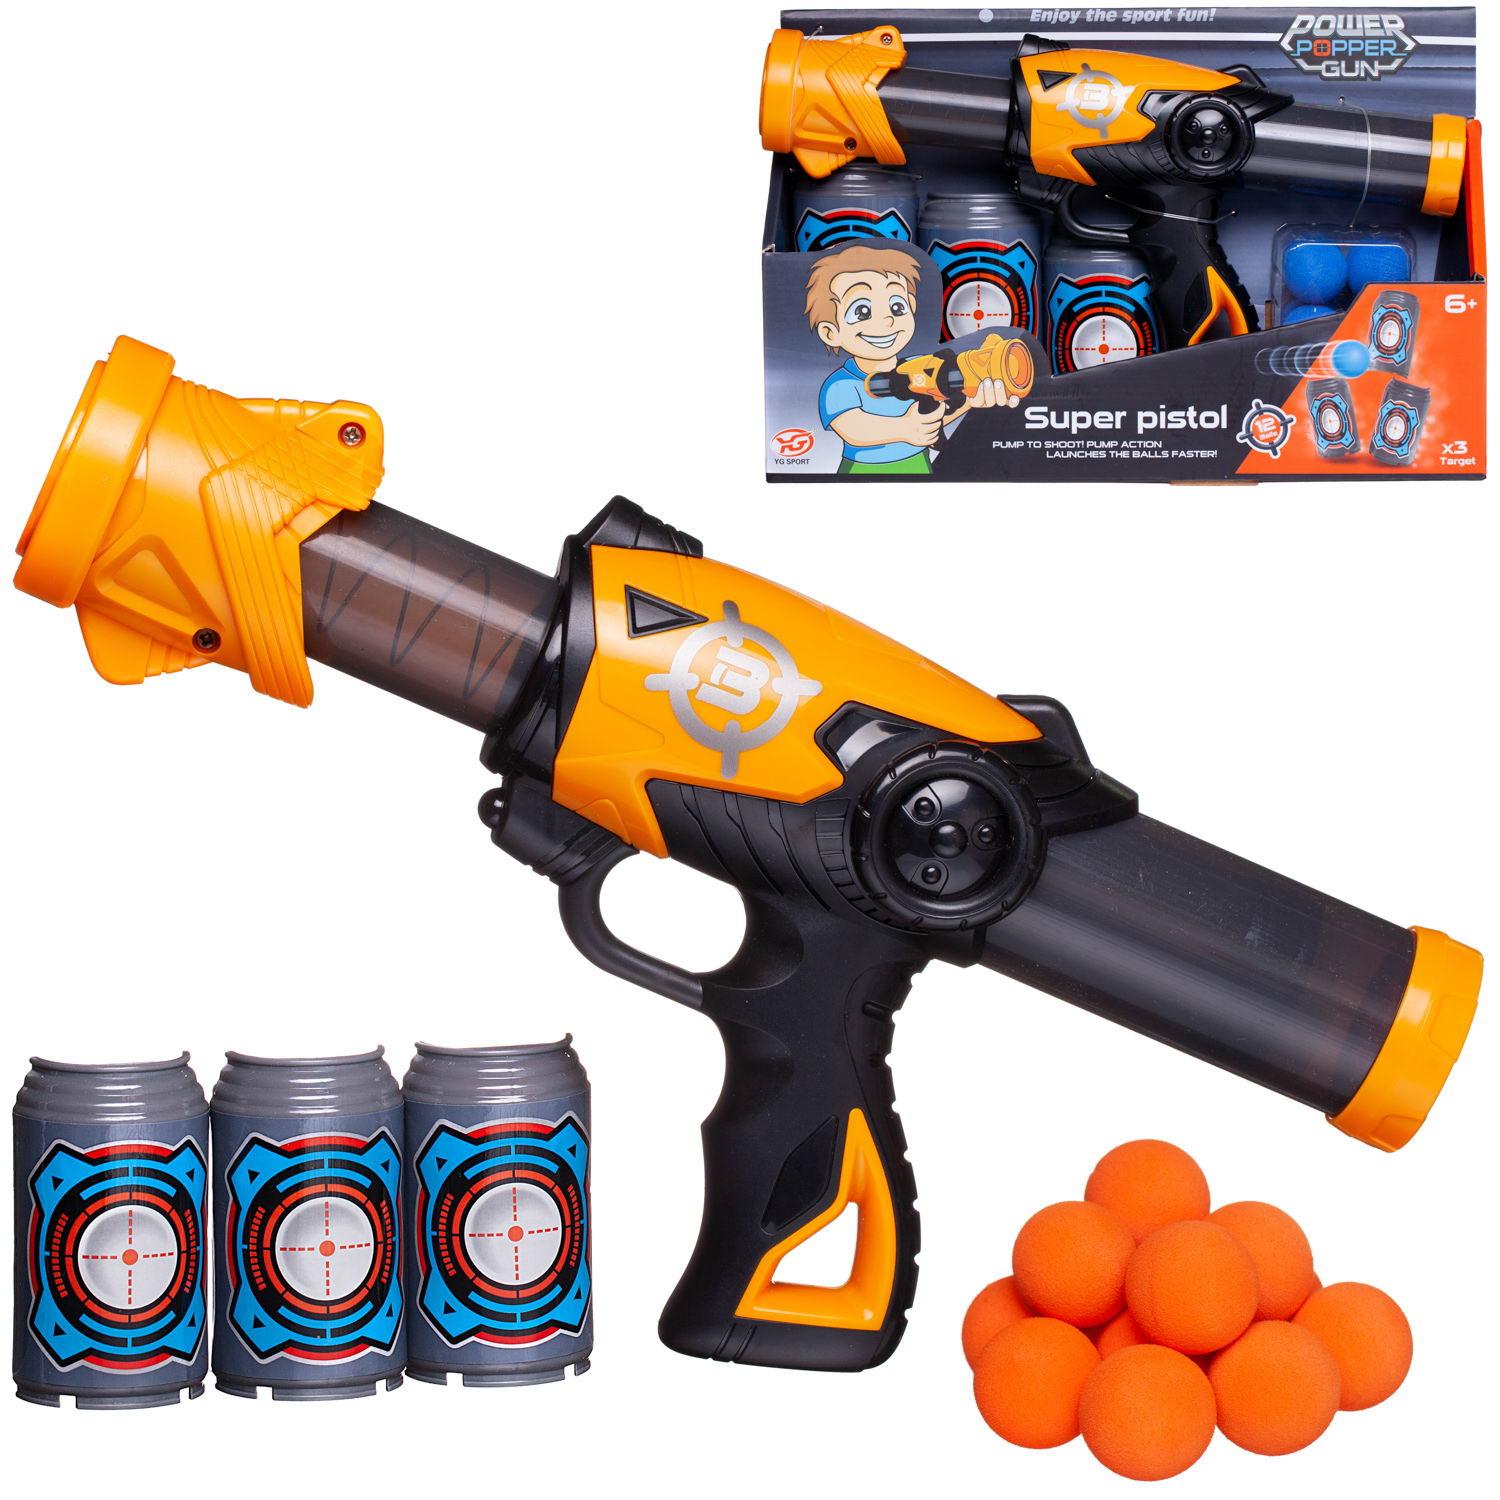 Бластер игрушка Junfa Пистолет c 12 мягкими шариками и 3 банками-мишенями, оранжевый №1 junfa бластер с мягкими снарядами 40 шт fj015